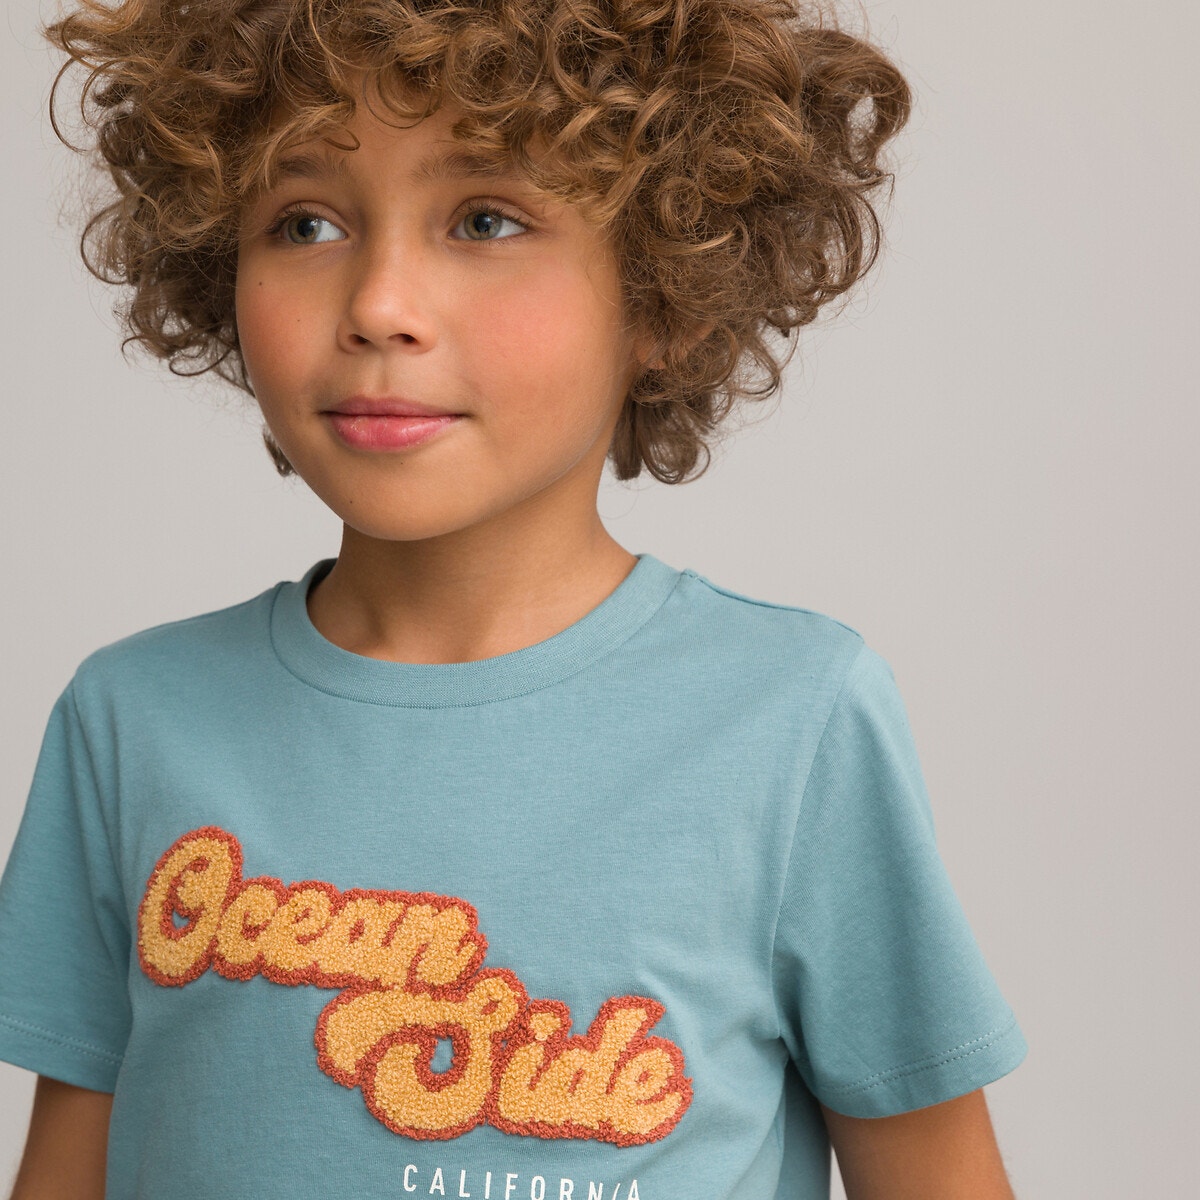 Μόδα > Παιδικά > Αγόρι > T-shirt, πόλο > Κοντά μανίκια Κοντομάνικο T-shirt με μπουκλέ μήνυμα μπροστά